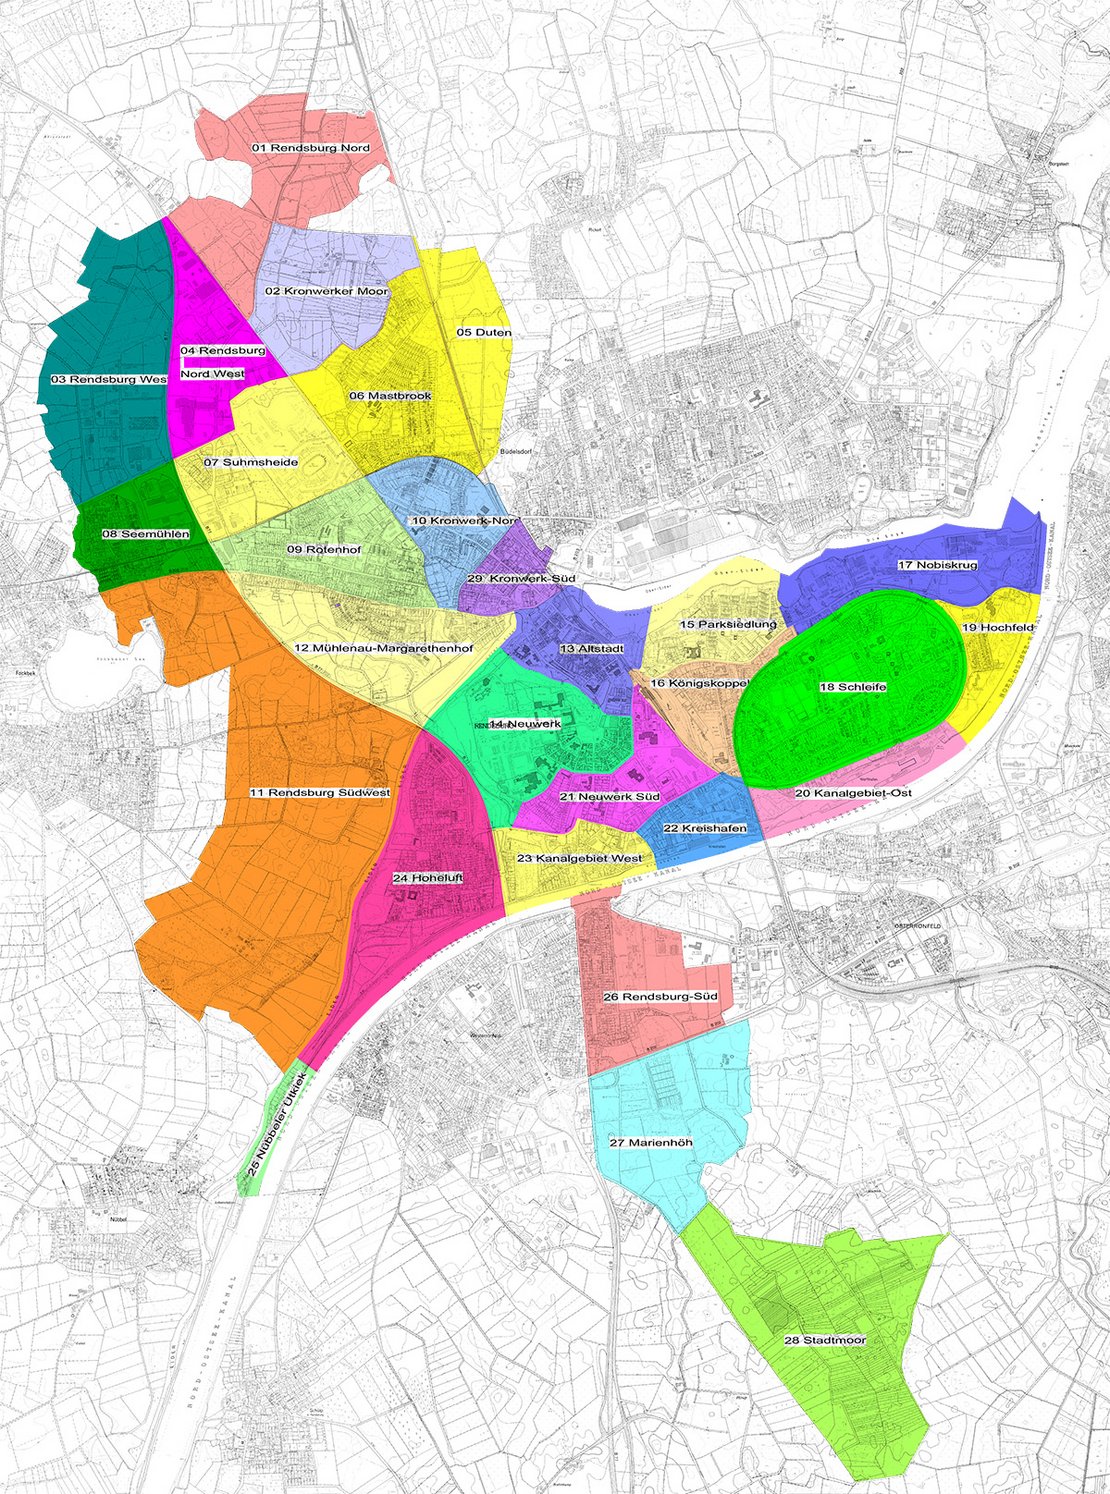 Auf einer Stadtkarte sind die einzelnen Stadtteile Rendsburgs eingetragen und in unerschiedlichen Farben hinterlegt.